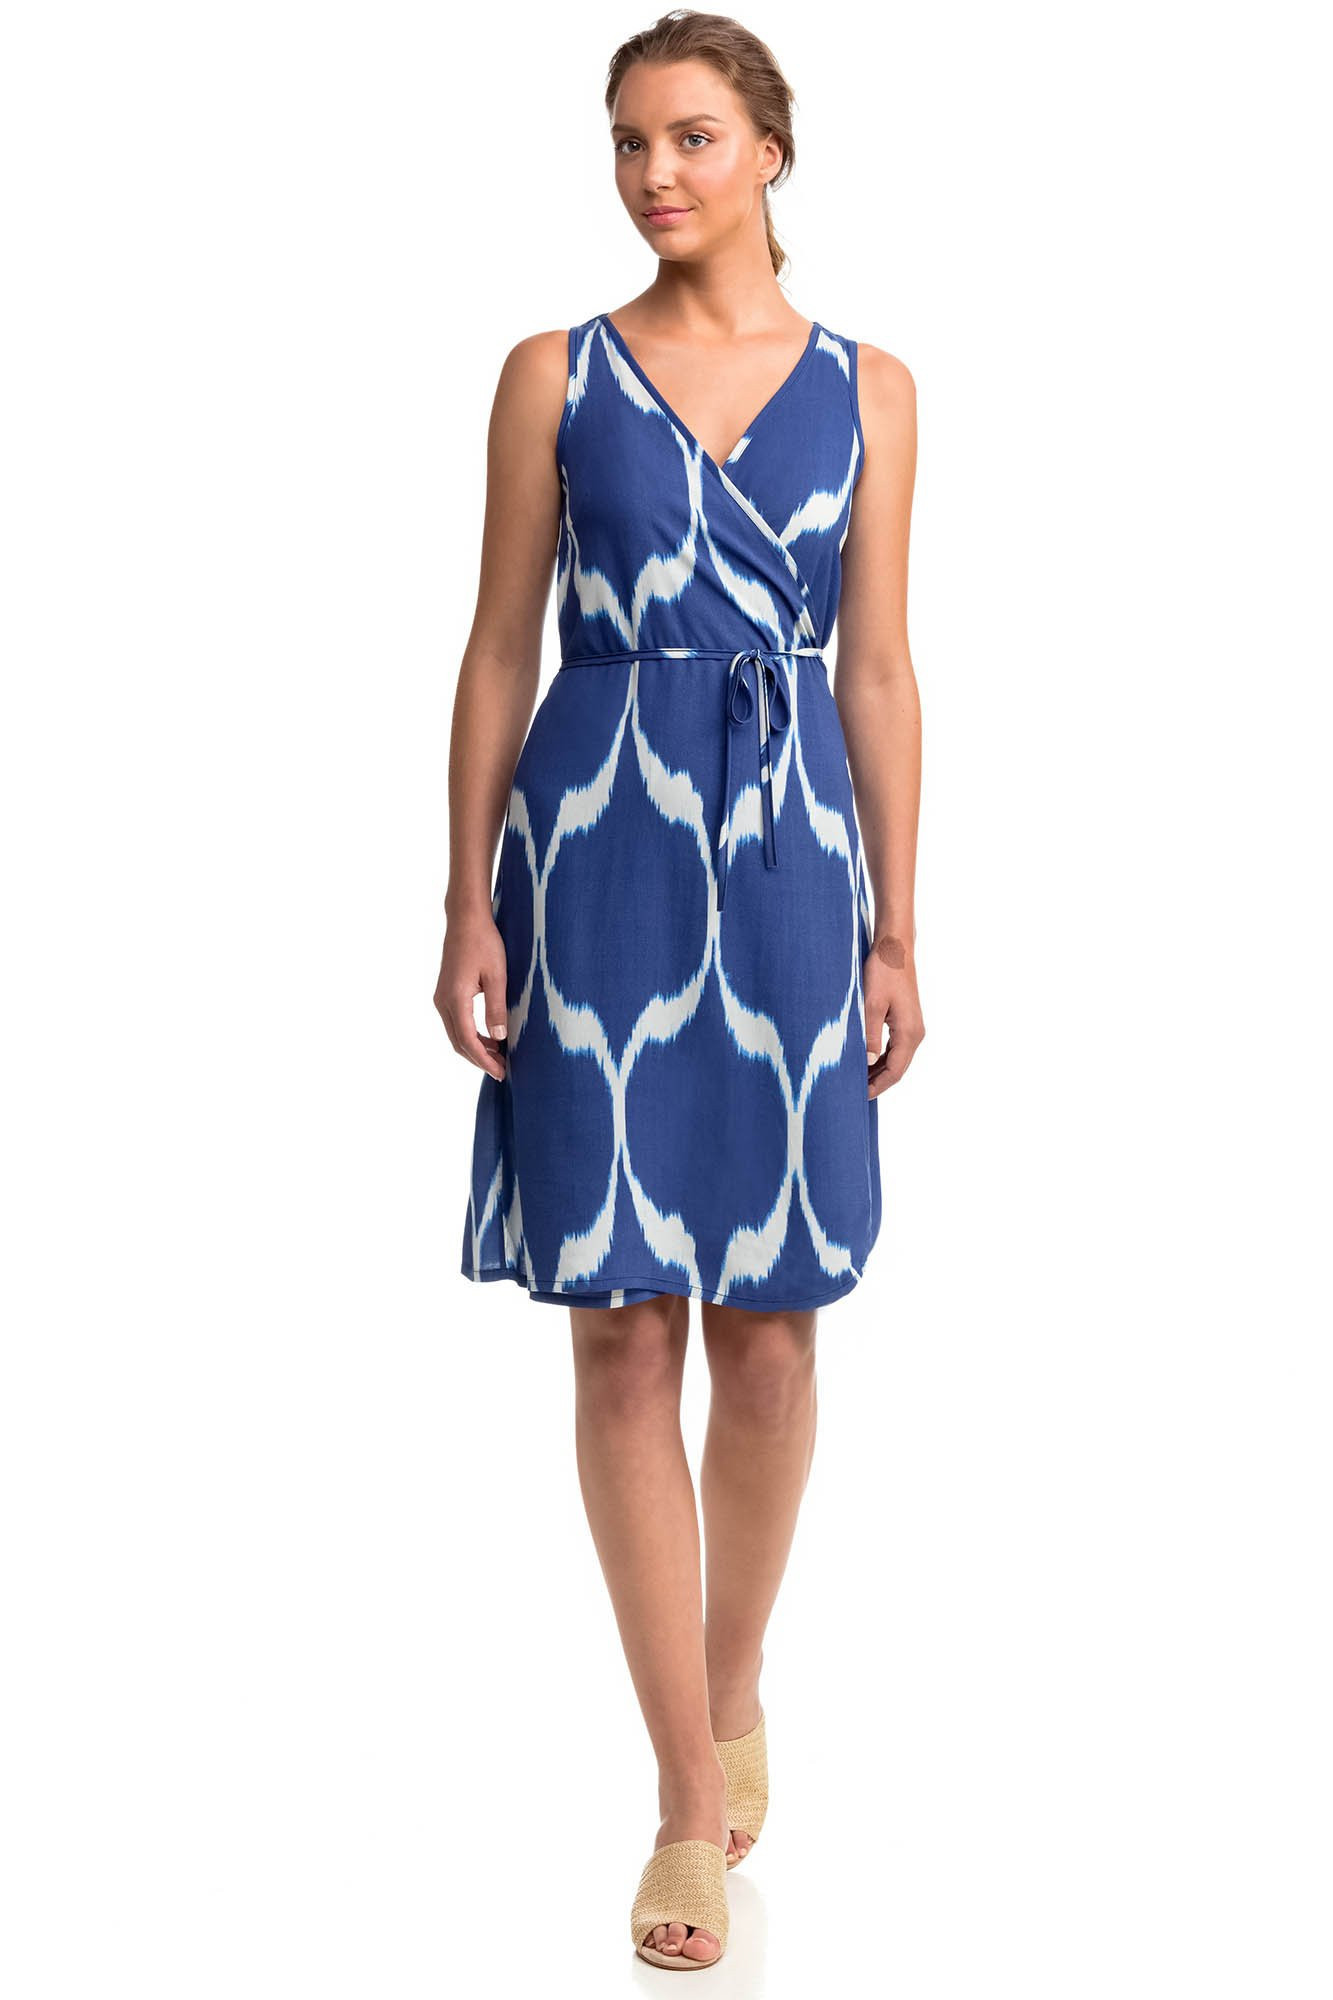 šaty L tmavě modrá vzor model 17410443 - Vamp